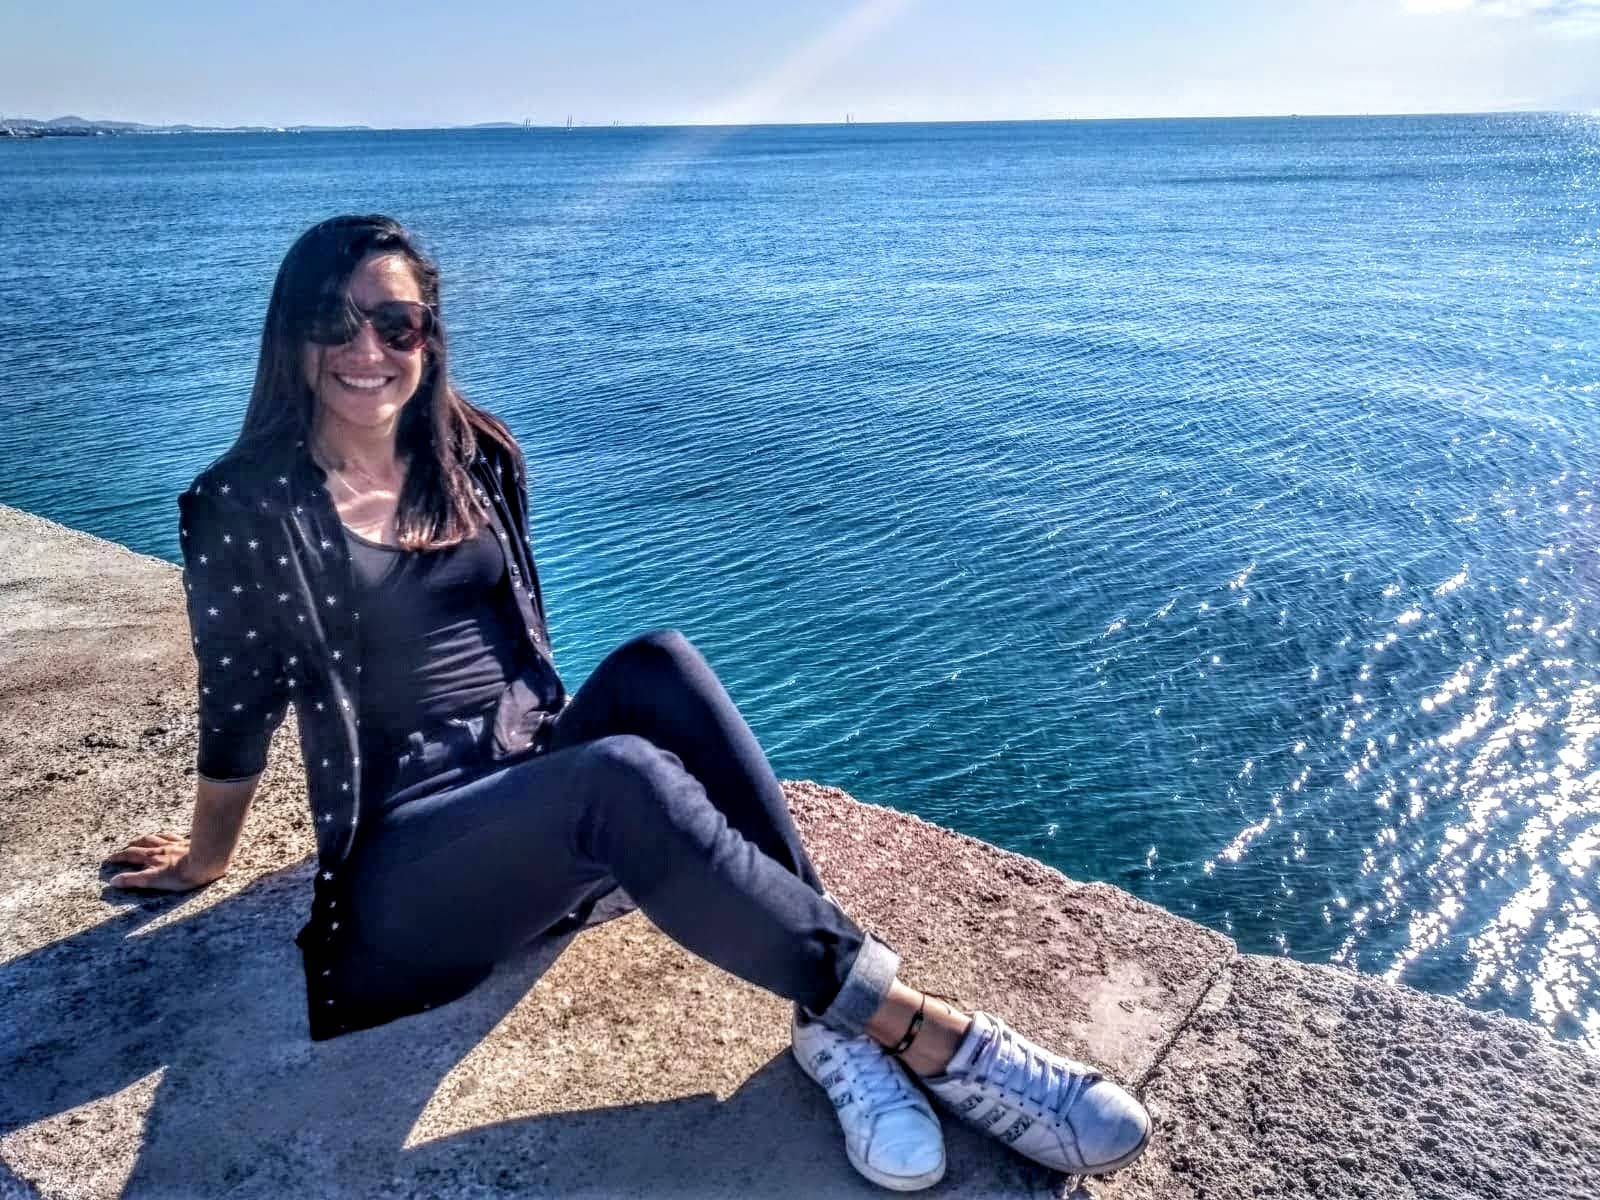 Carolina sentada a lado del mar Mediterráneo en Flisvos Marina , Athenas.

Esta no es una foto en bikini! Es una representación de su cambio de vida.

Su sonrisa y expresión relajada son muestra de su satisfacción por dedicar su vida a ayudar a las personas a vivir vidas más saludables.